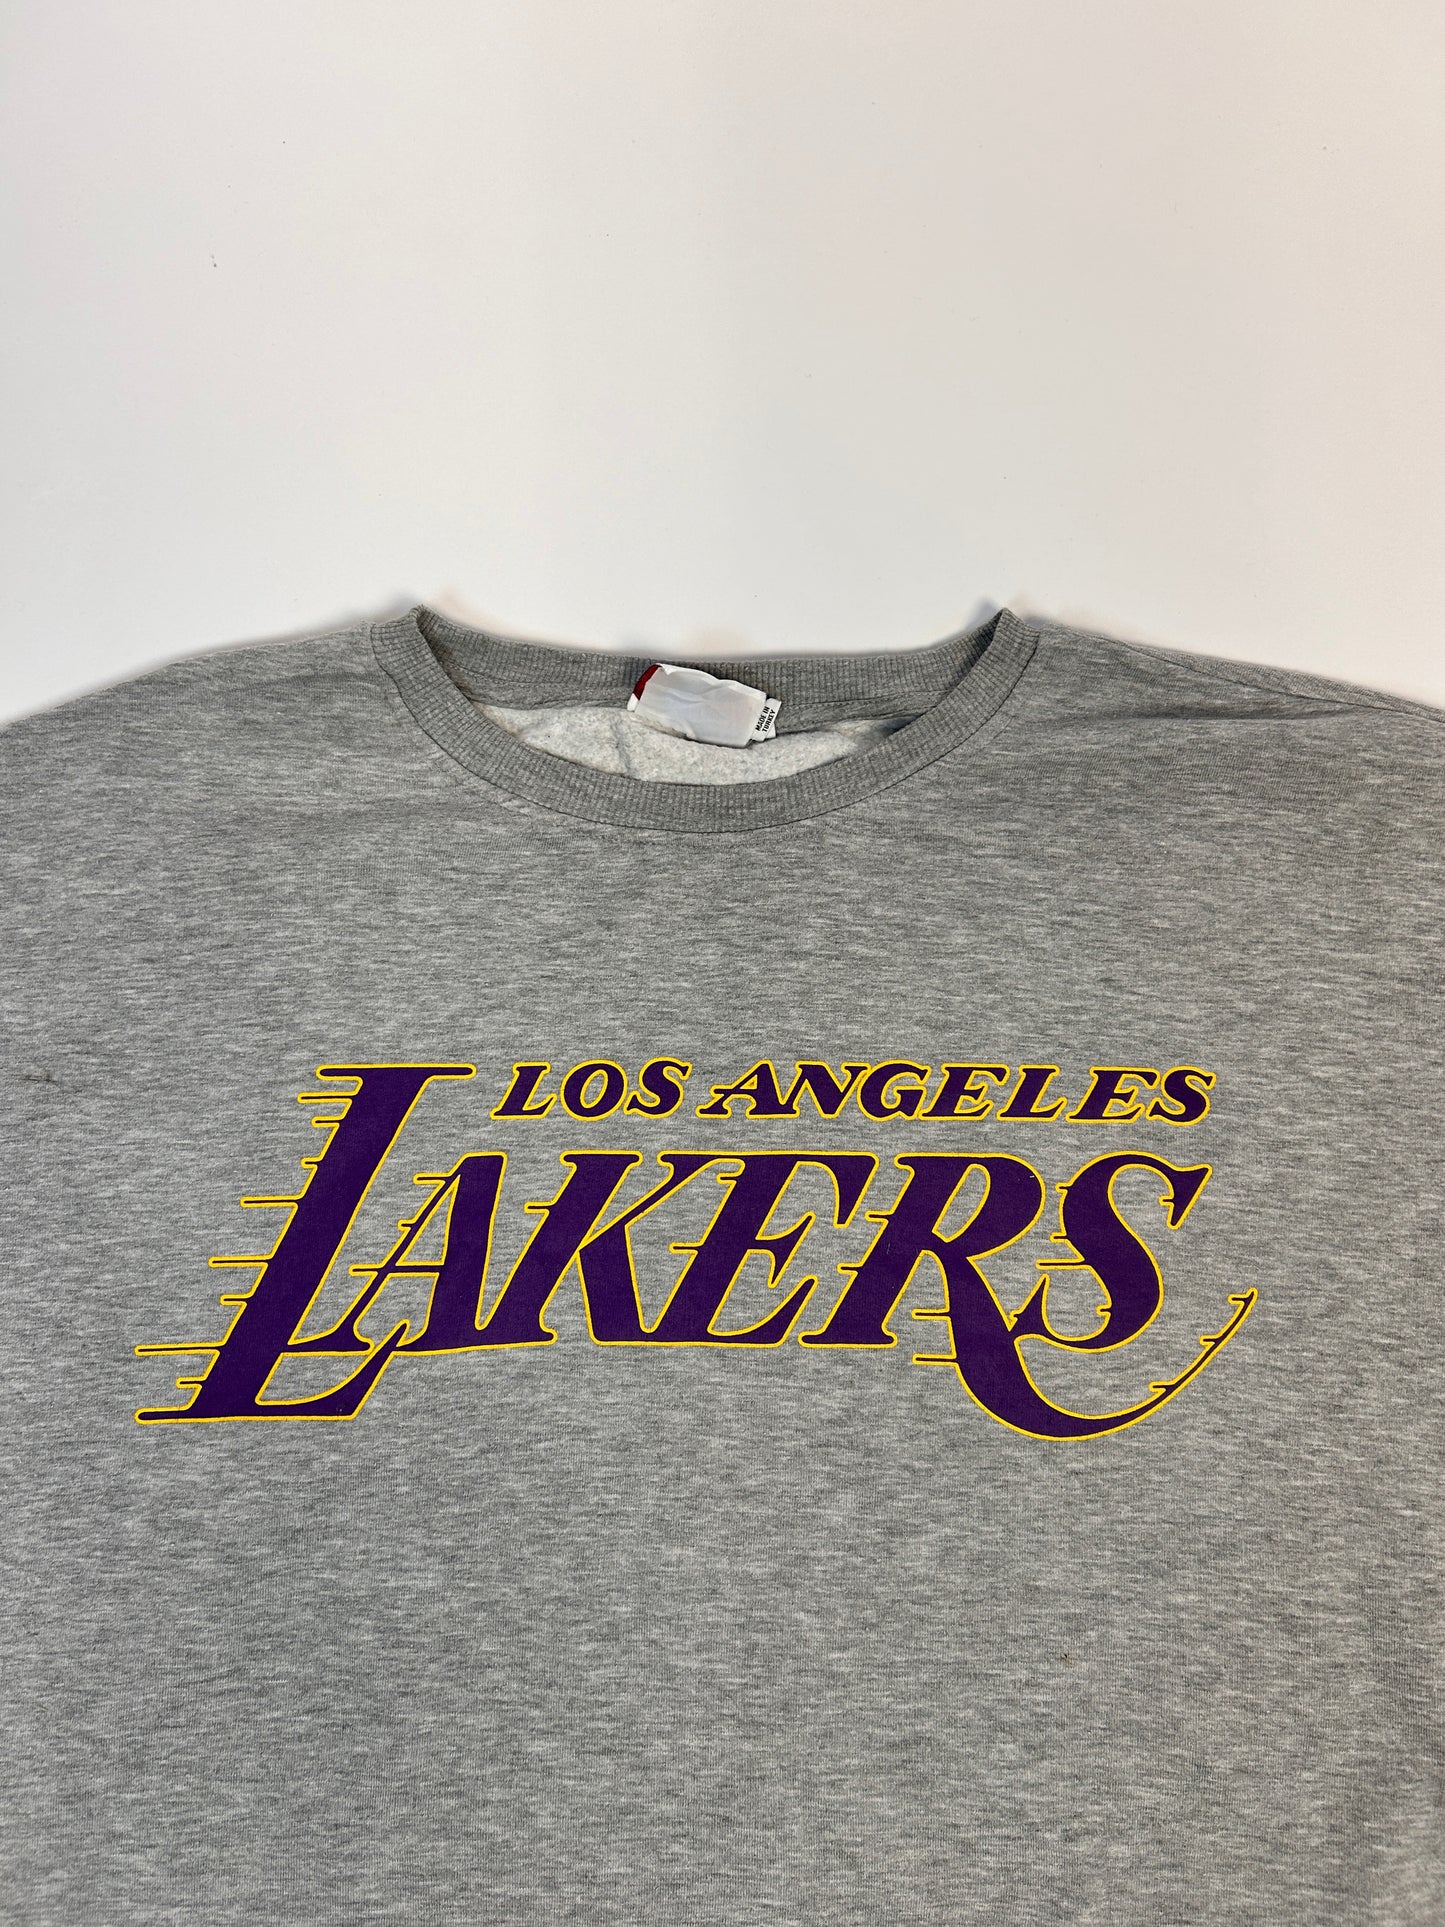 Lakers sweatshirt - XXL